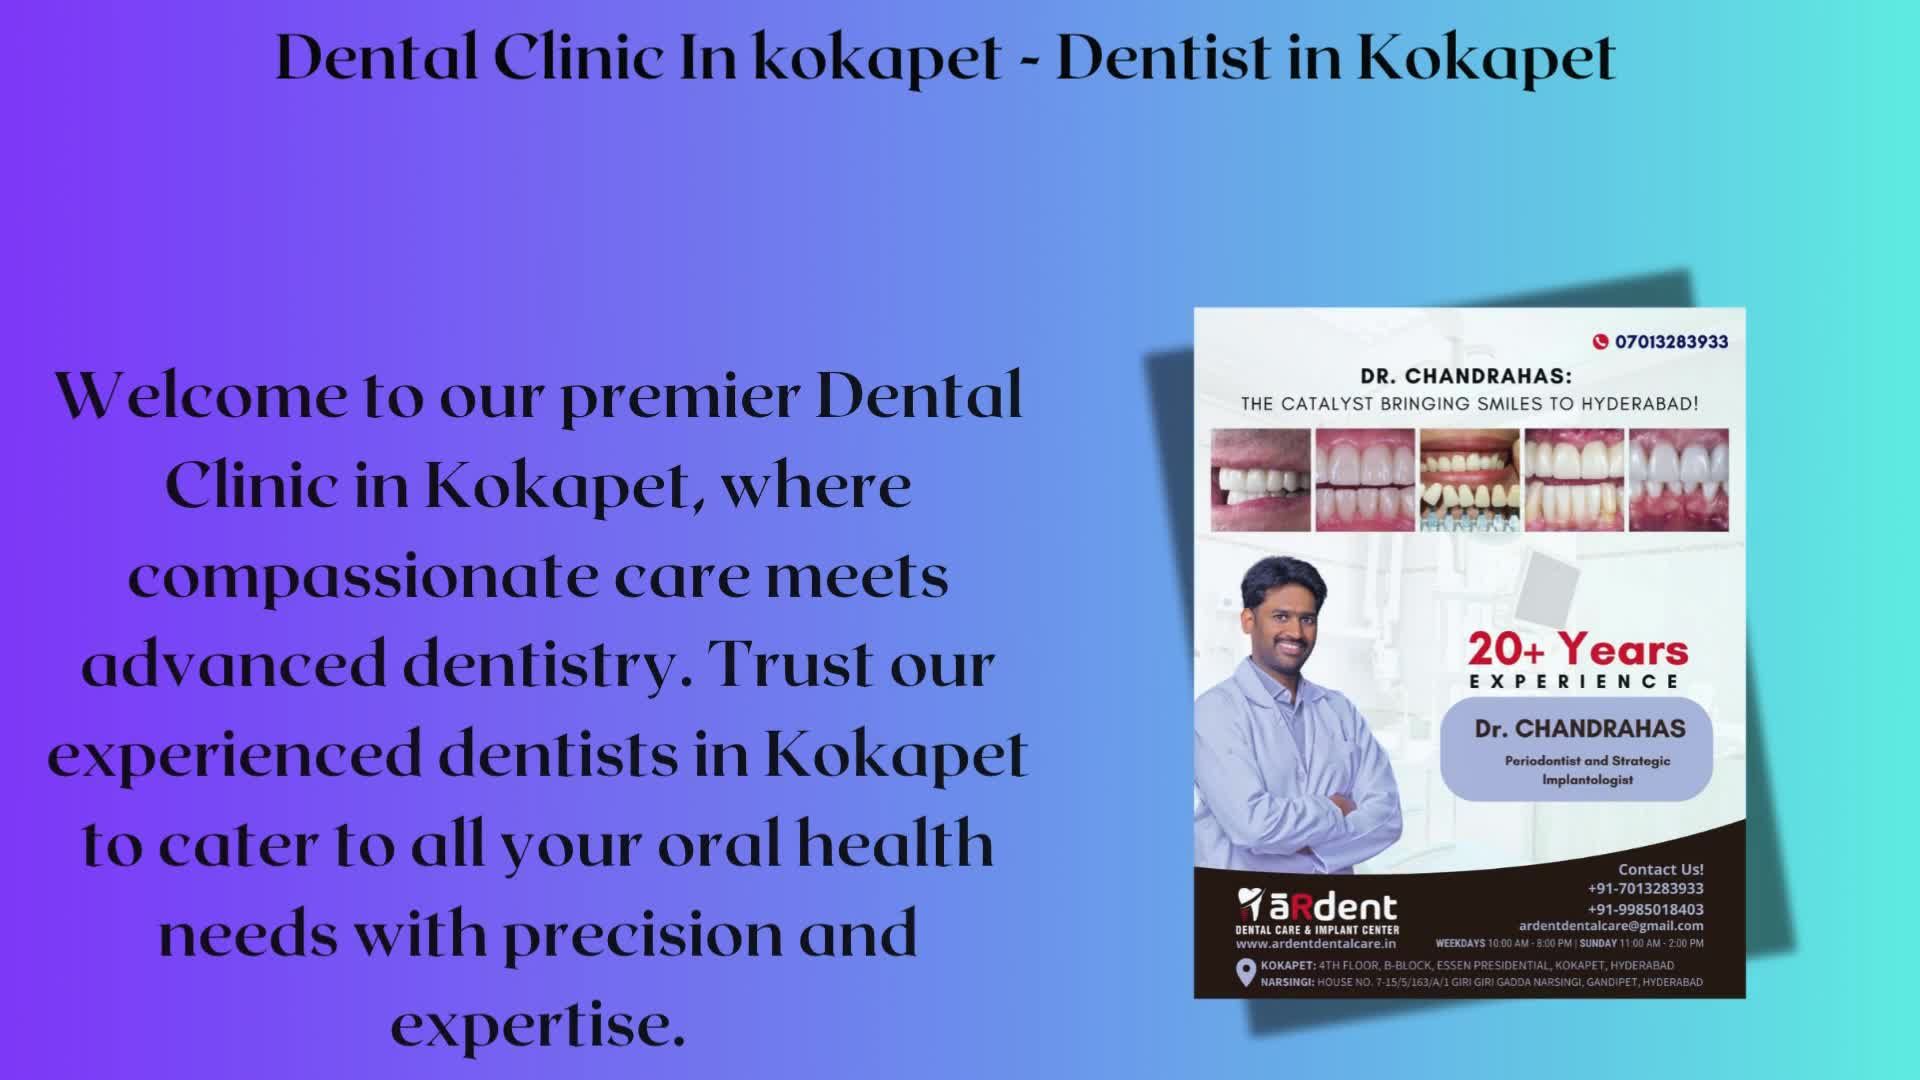 Dental Clinic In Kokapet - Dentist in Kokapet